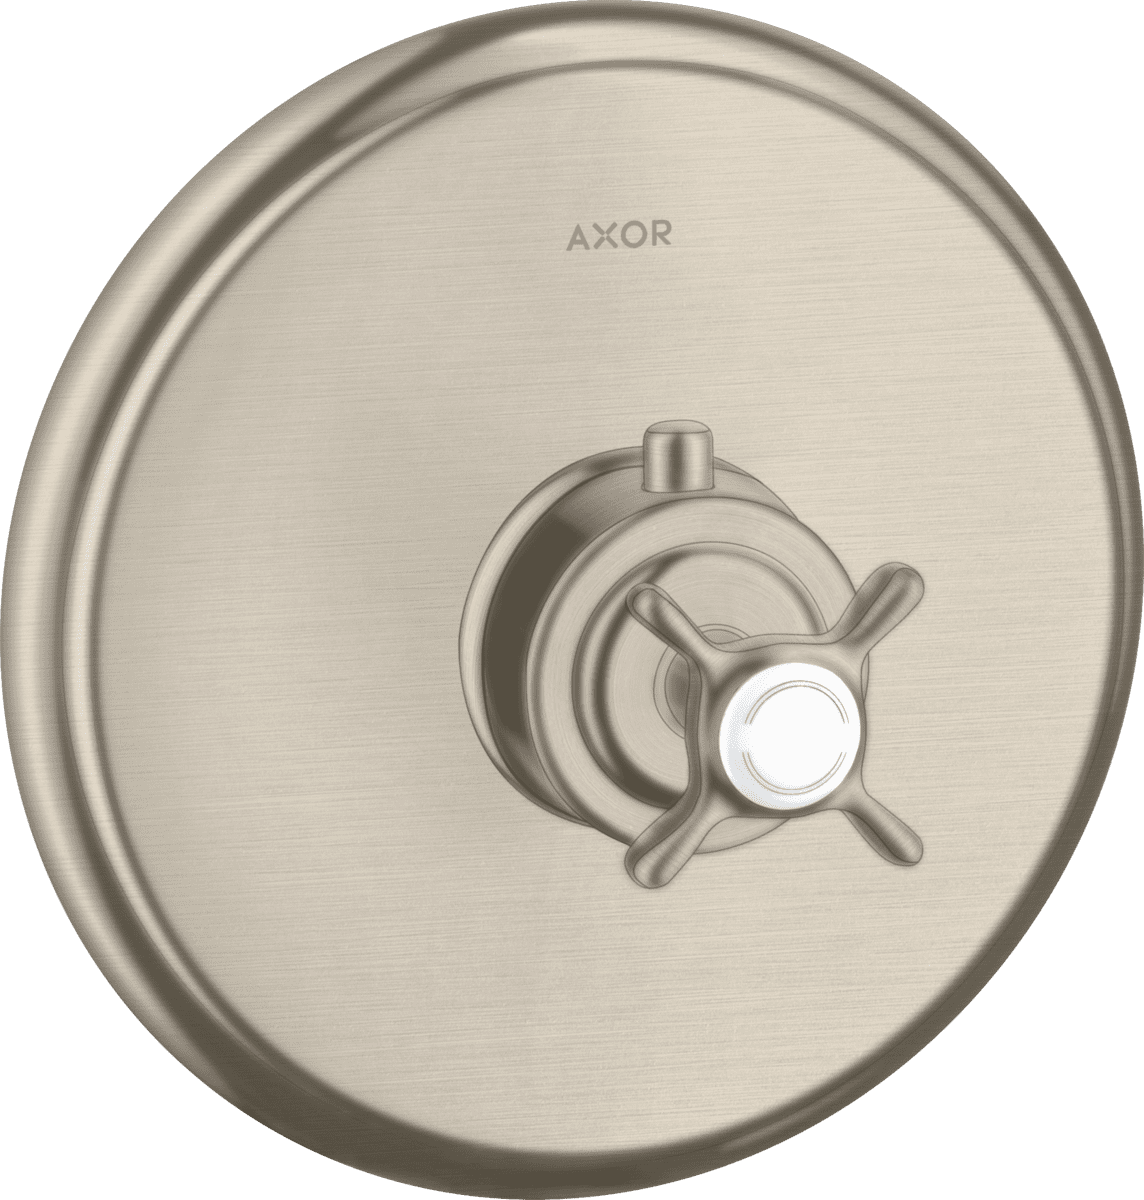 εικόνα του HANSGROHE AXOR Montreux Thermostat for concealed installation with cross handle #16810820 - Brushed Nickel